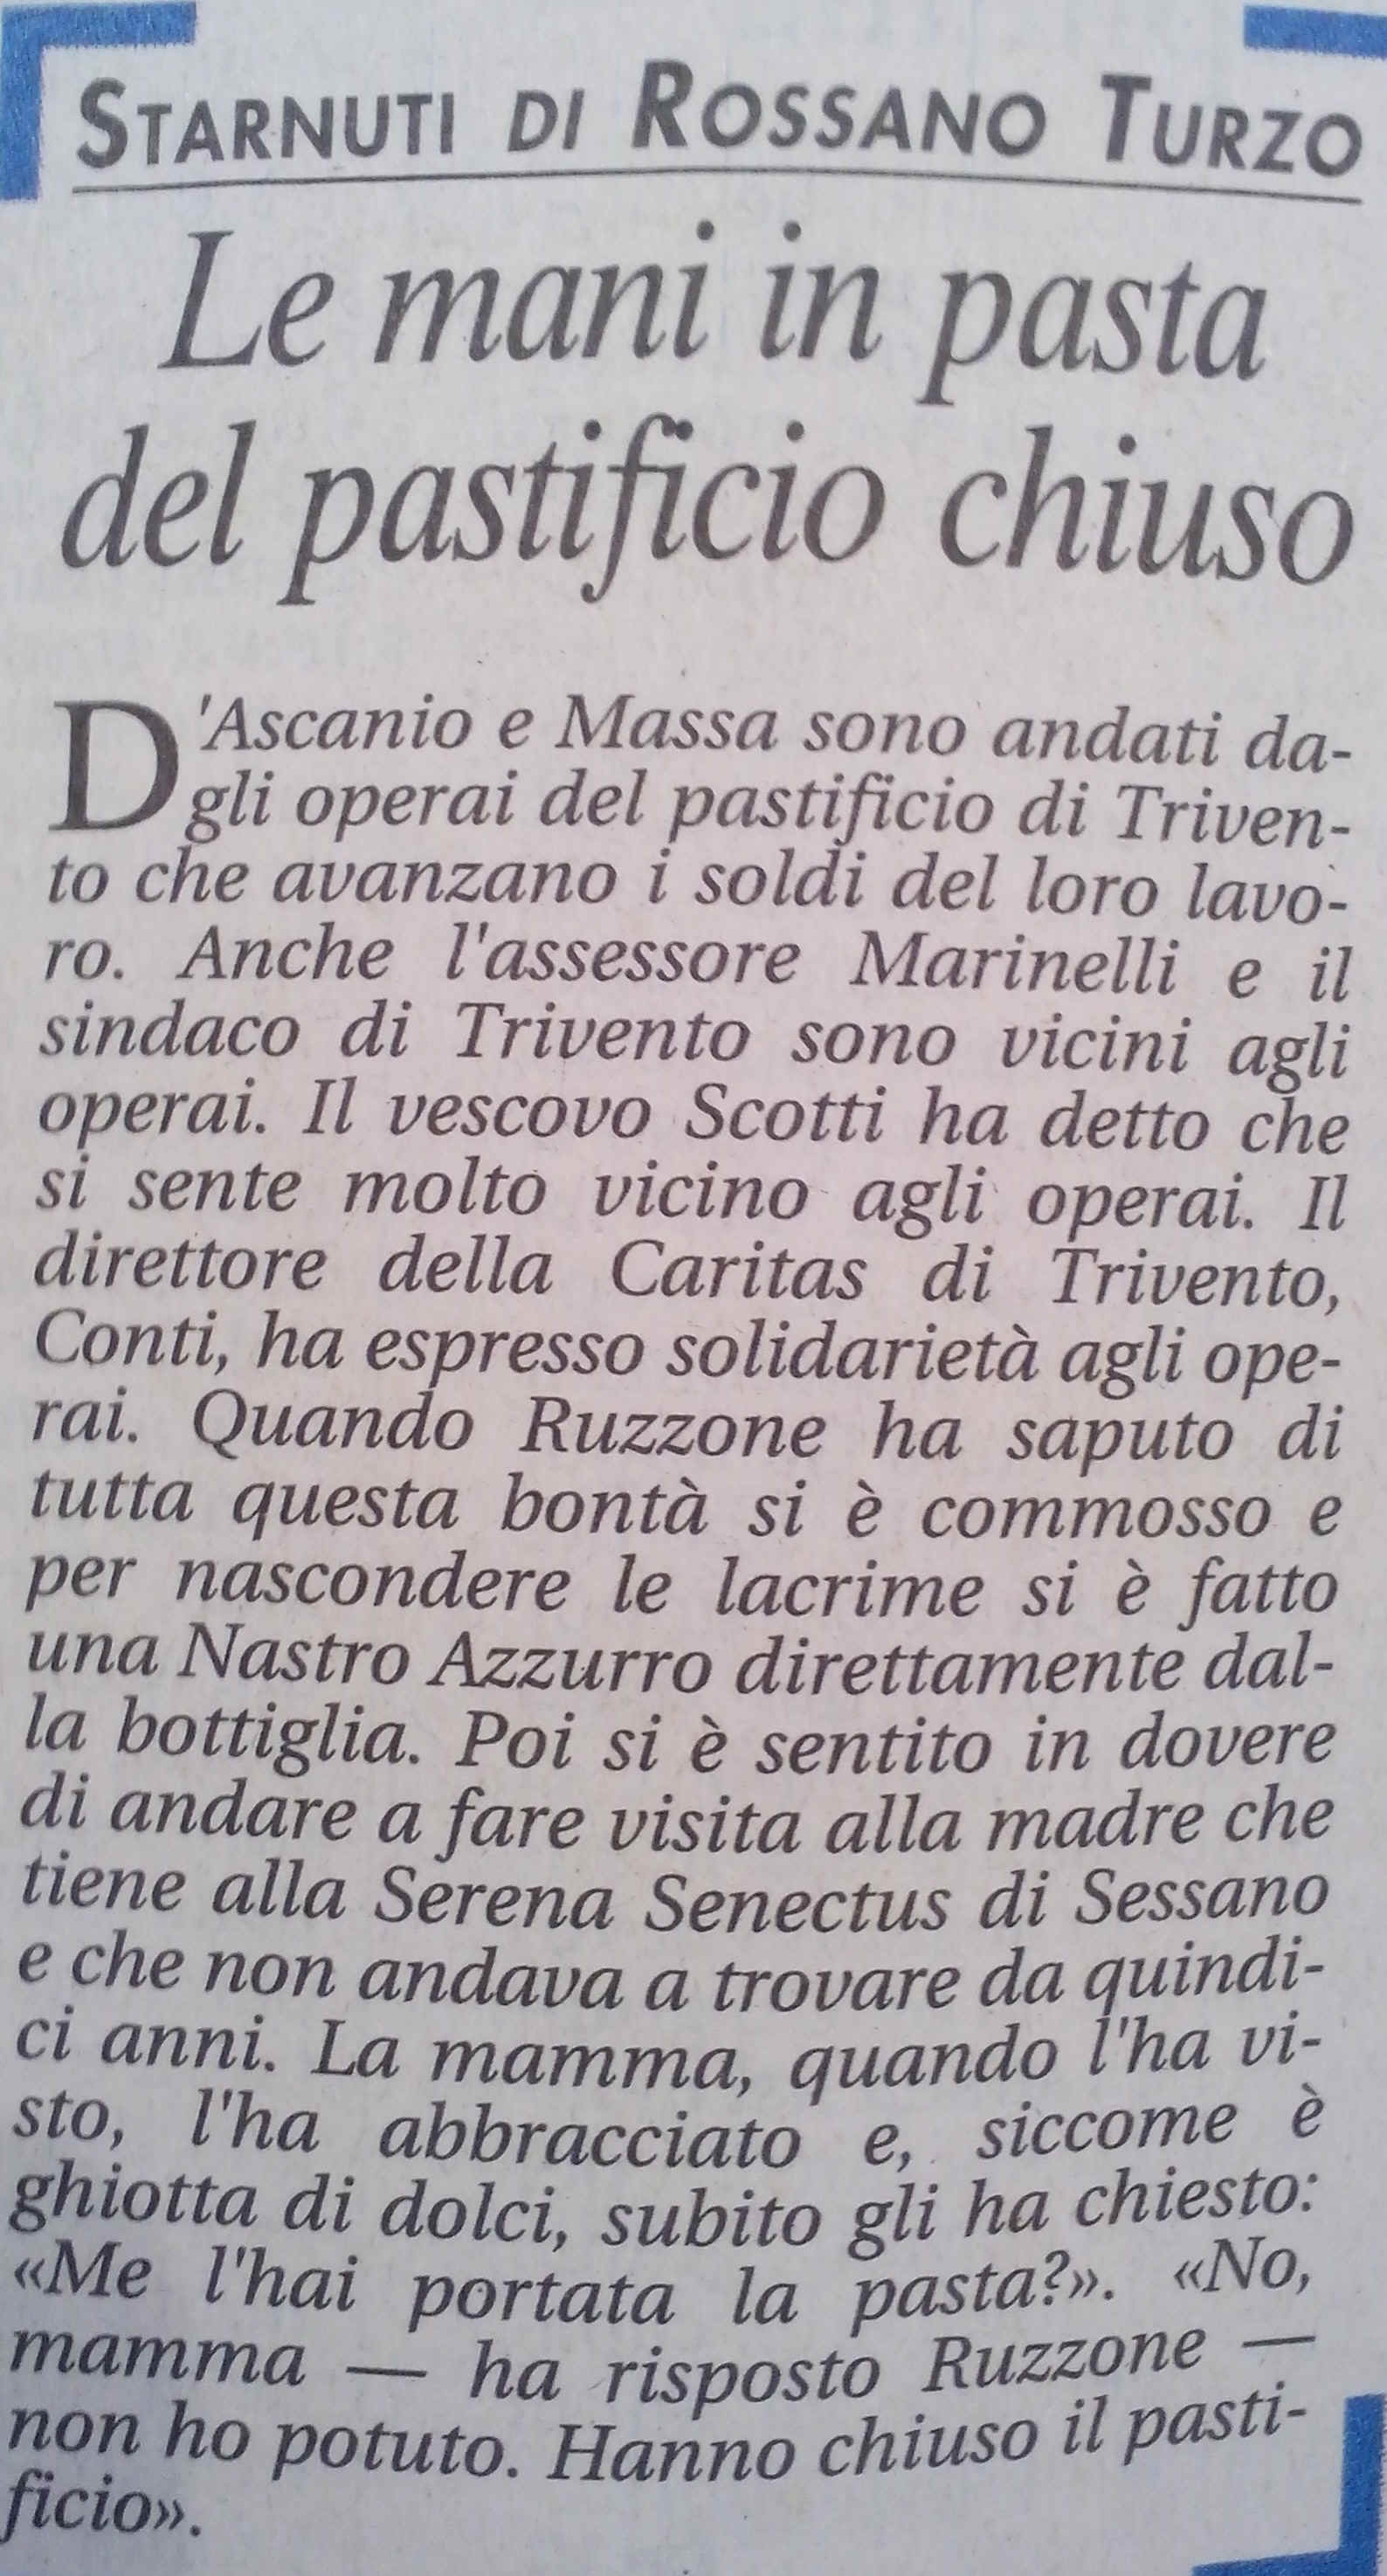 Rossano Turzo - Starnuti -4 gennaio 2007